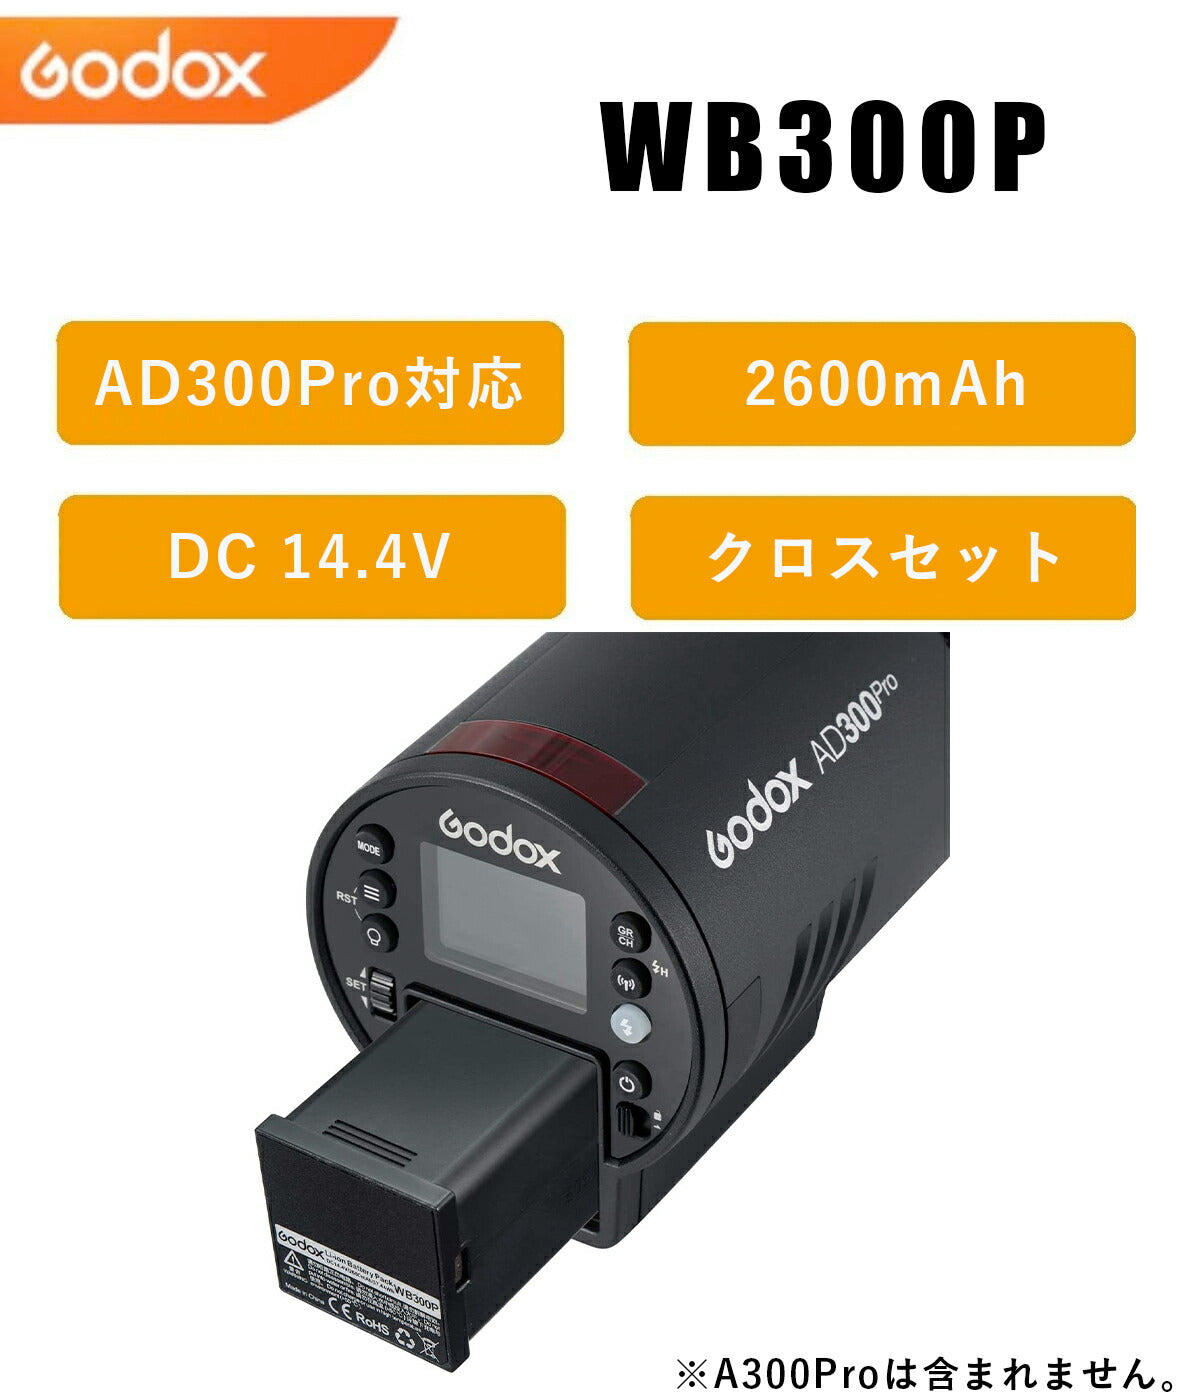 日本正規代理店 Godox WB300P AD300Pro対応 リチウム バッテリー